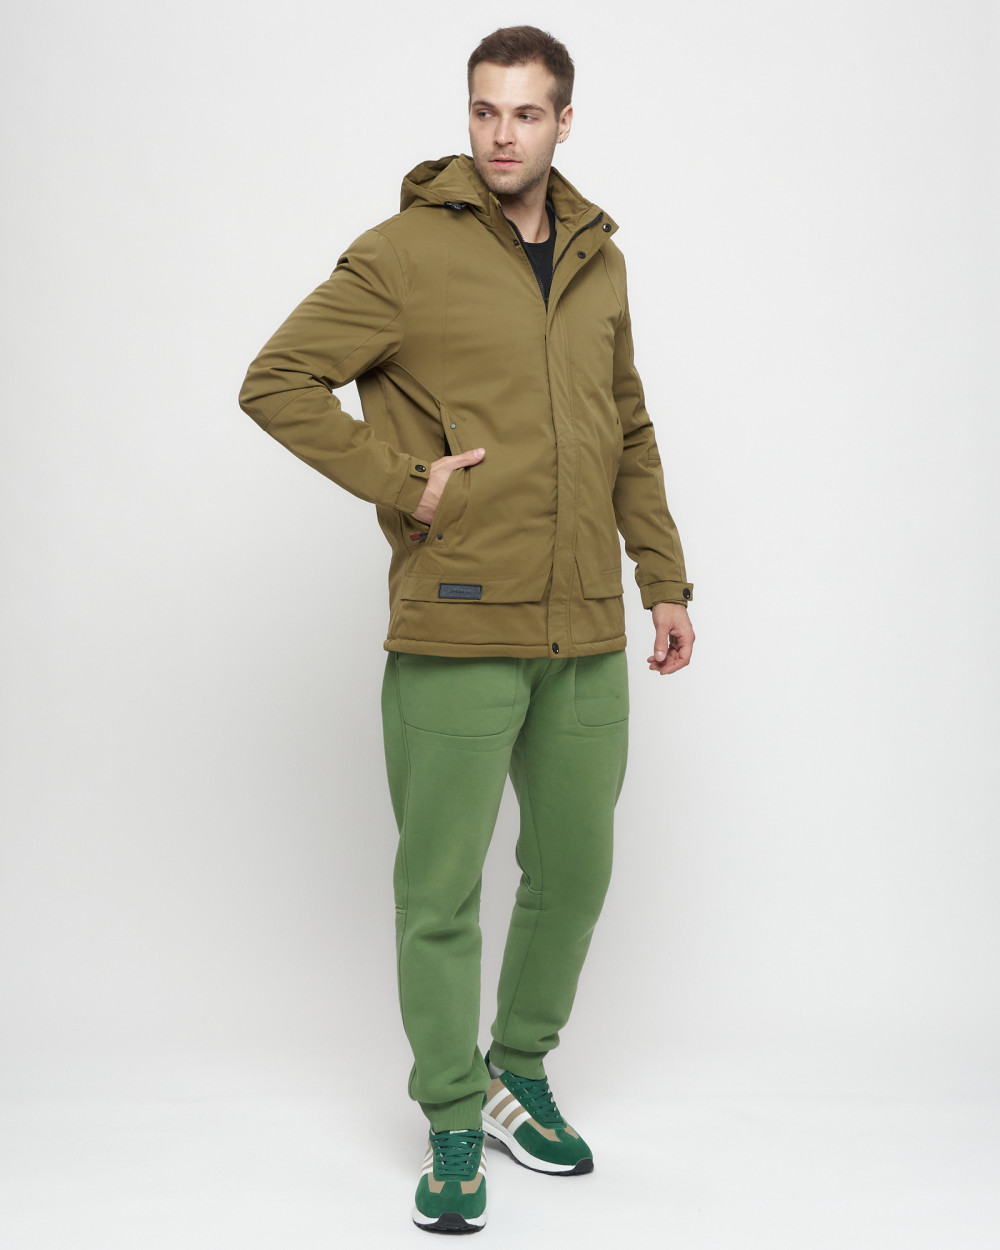 Купить куртку мужскую спортивную весеннюю оптом от производителя недорого в Москве 8599B 1